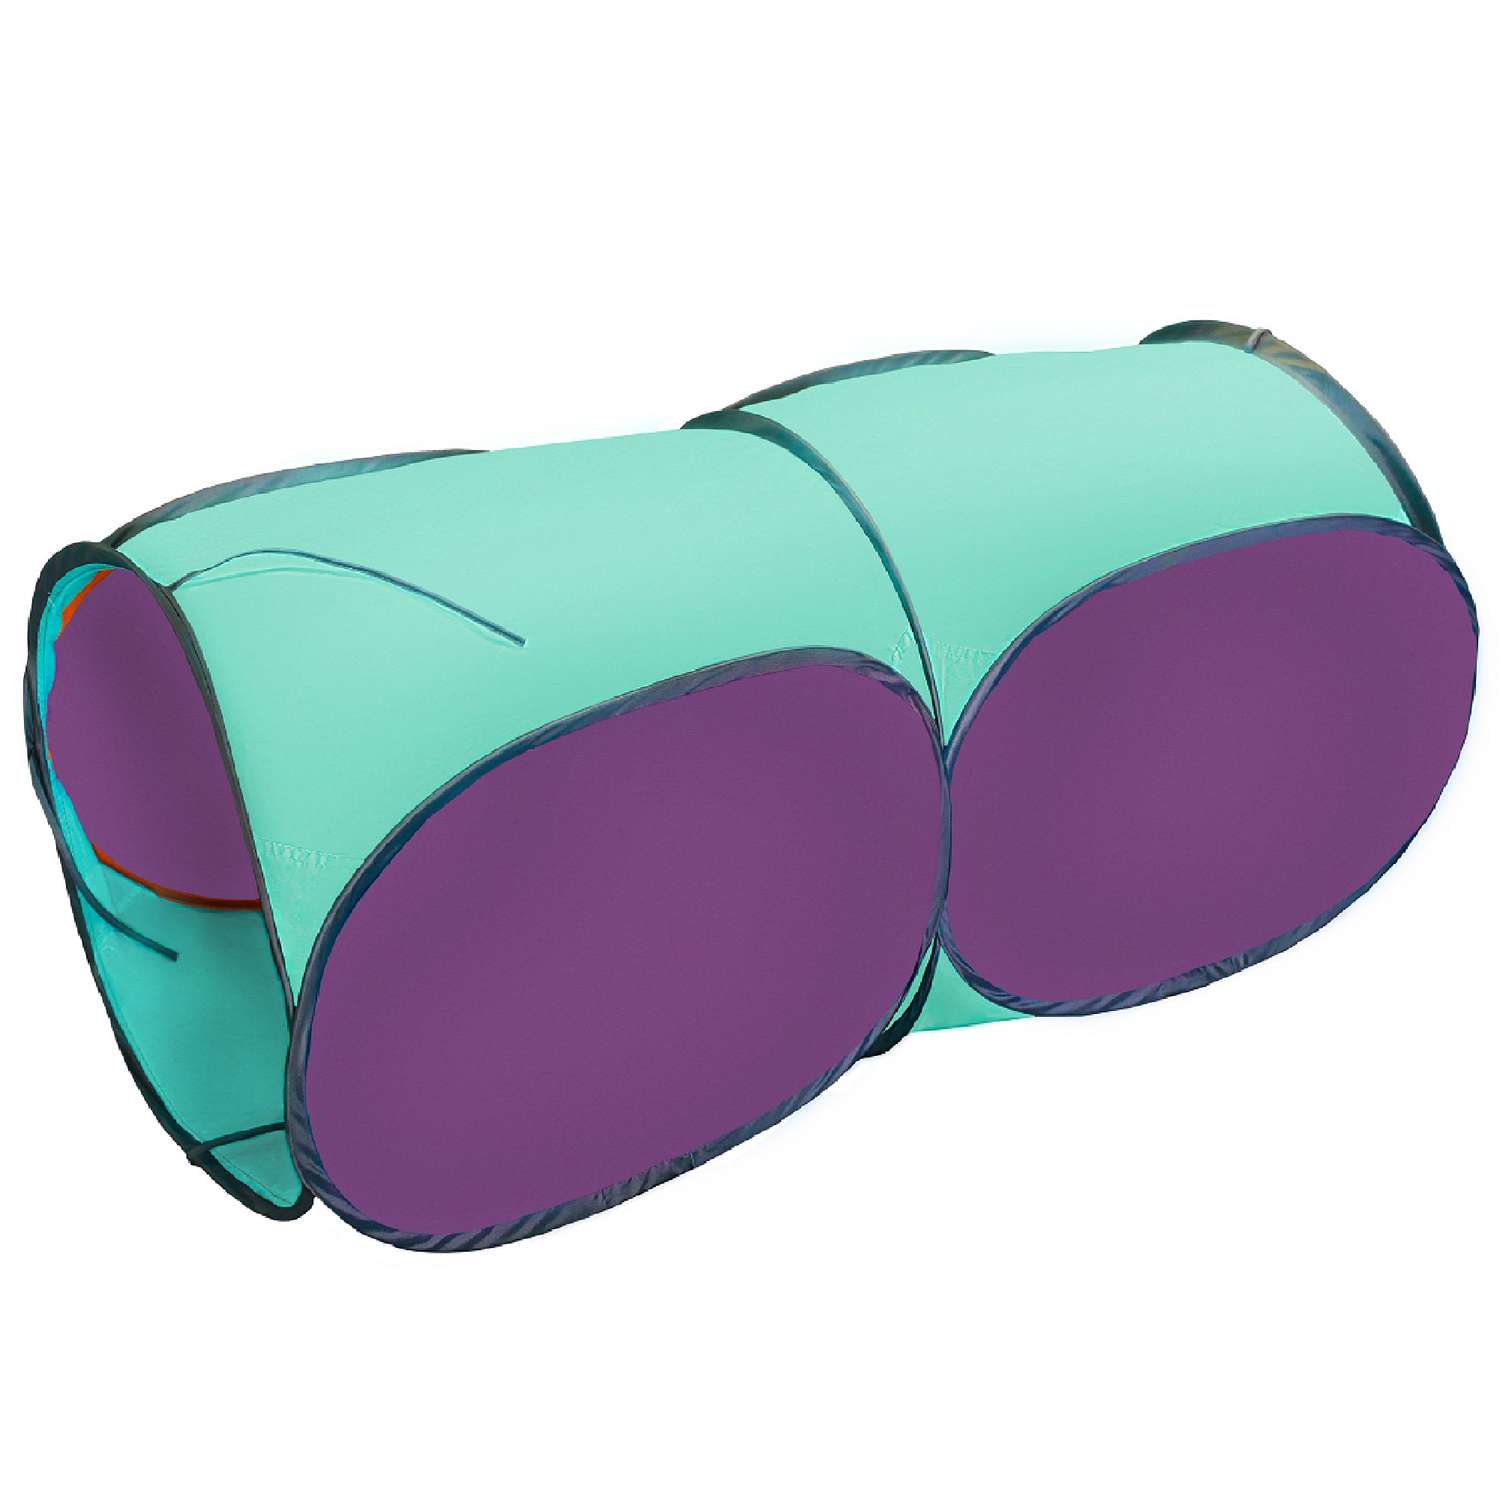 Тоннель для палатки Belon familia двухсекционный цвет фиолетовый и бирюзовый - фото 1